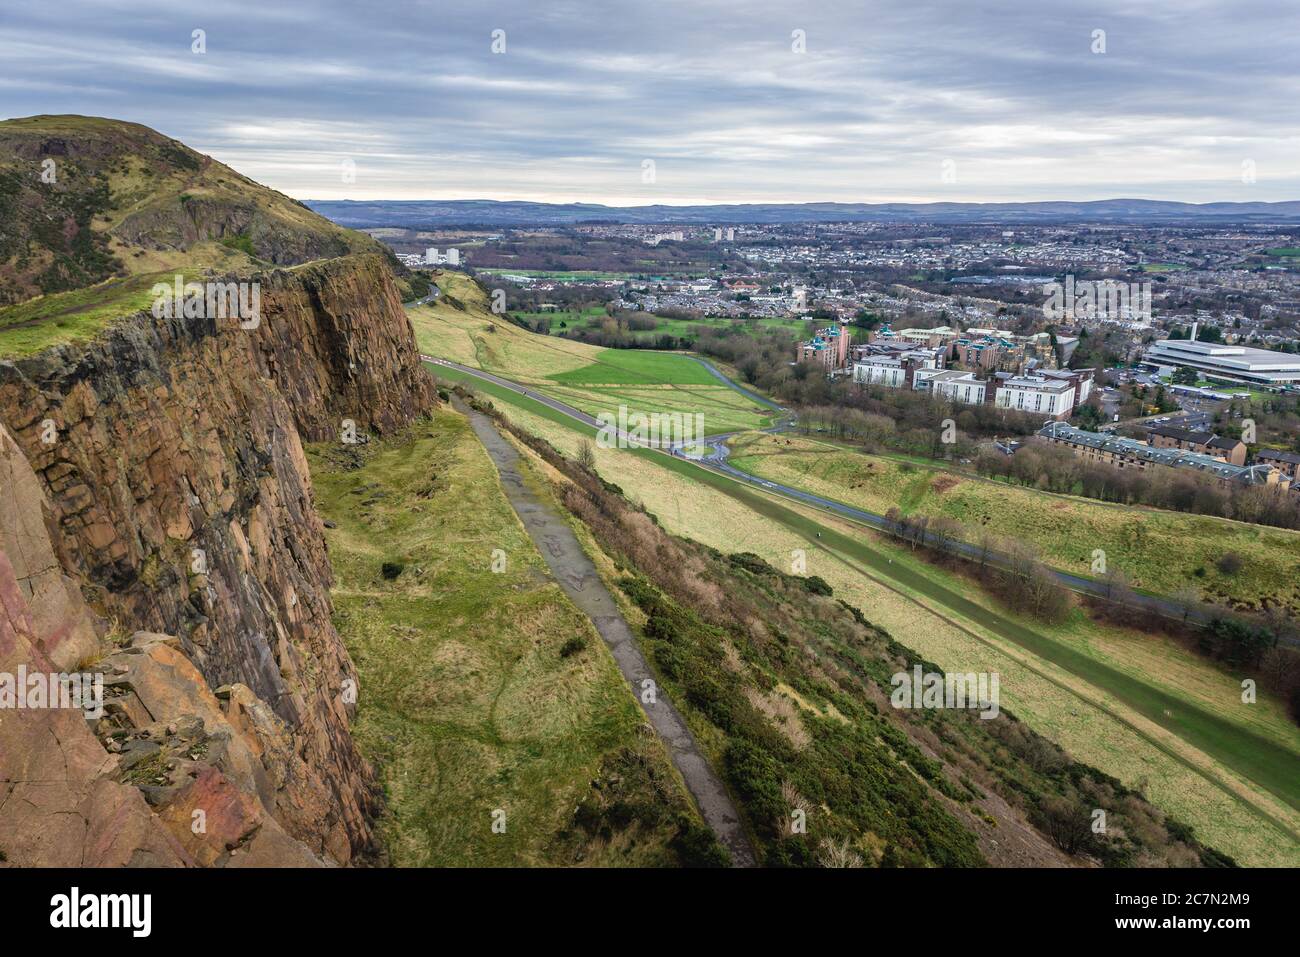 Vue depuis Salisbury Crags dans Holyrood Park à Édimbourg, la capitale de l'Écosse, une partie du Royaume-Uni Banque D'Images